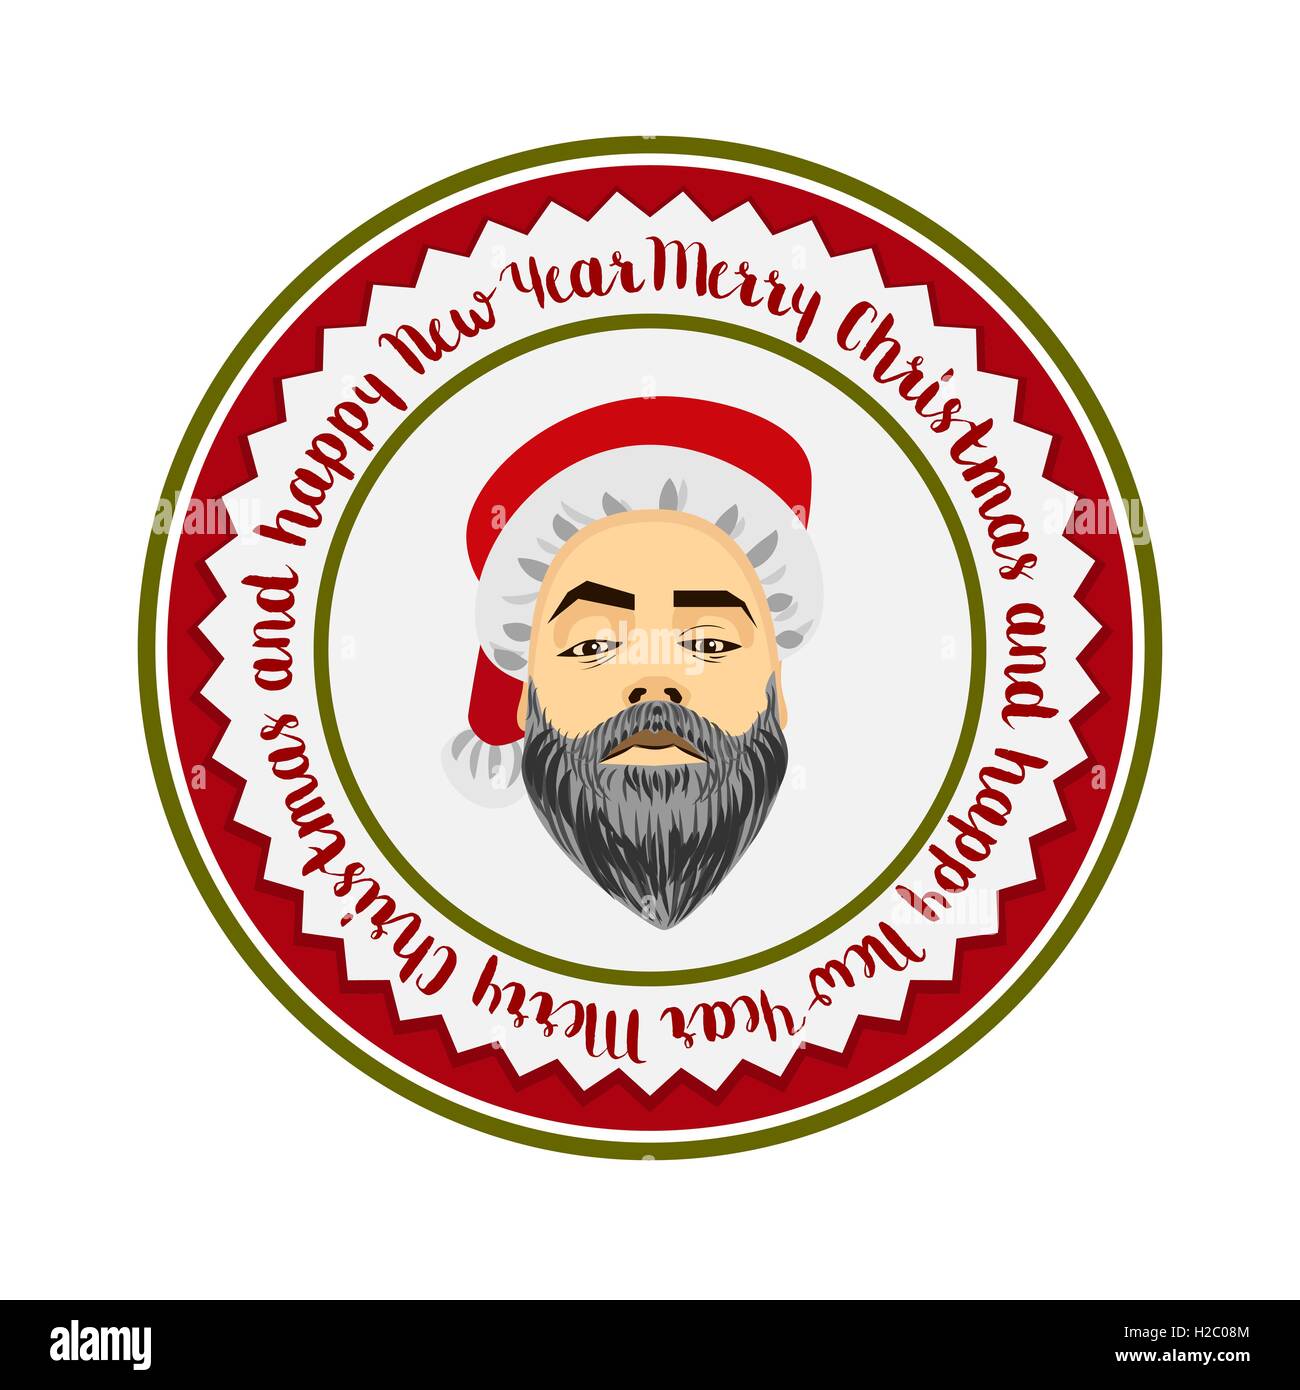 Vektor monochrome flache Logo gewagte Hipster Santa Claus Mode Label Silhouette wünschen Frohe Weihnachten, frohes neues Jahr cool Stock Vektor